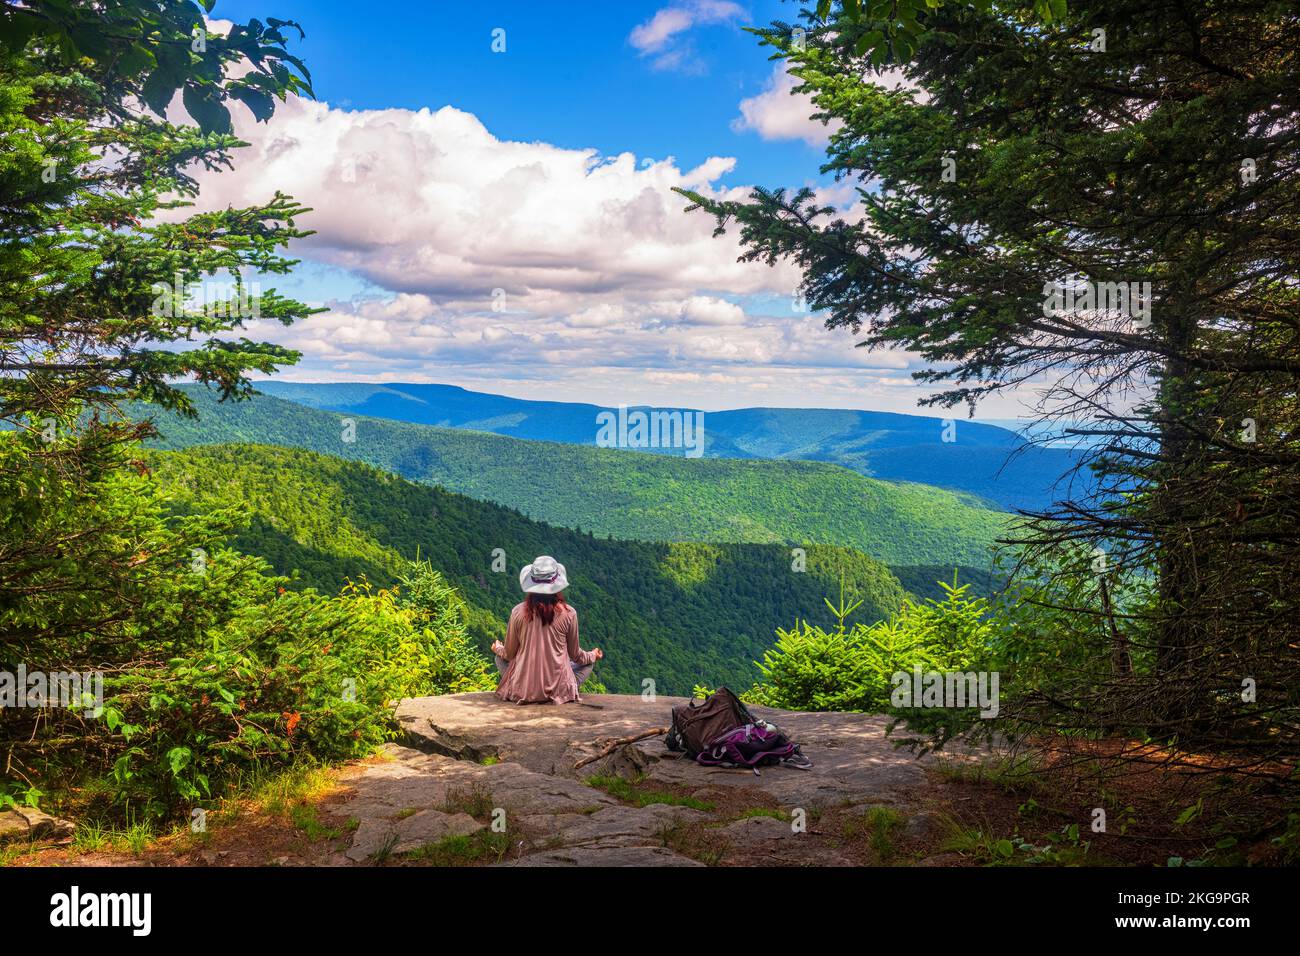 Une femme non identifiable est assise dans la posture de yoga Sukhasana au bord d'une falaise de West Kill Summit dans les montagnes Catskill de l'État de New York pendant Banque D'Images